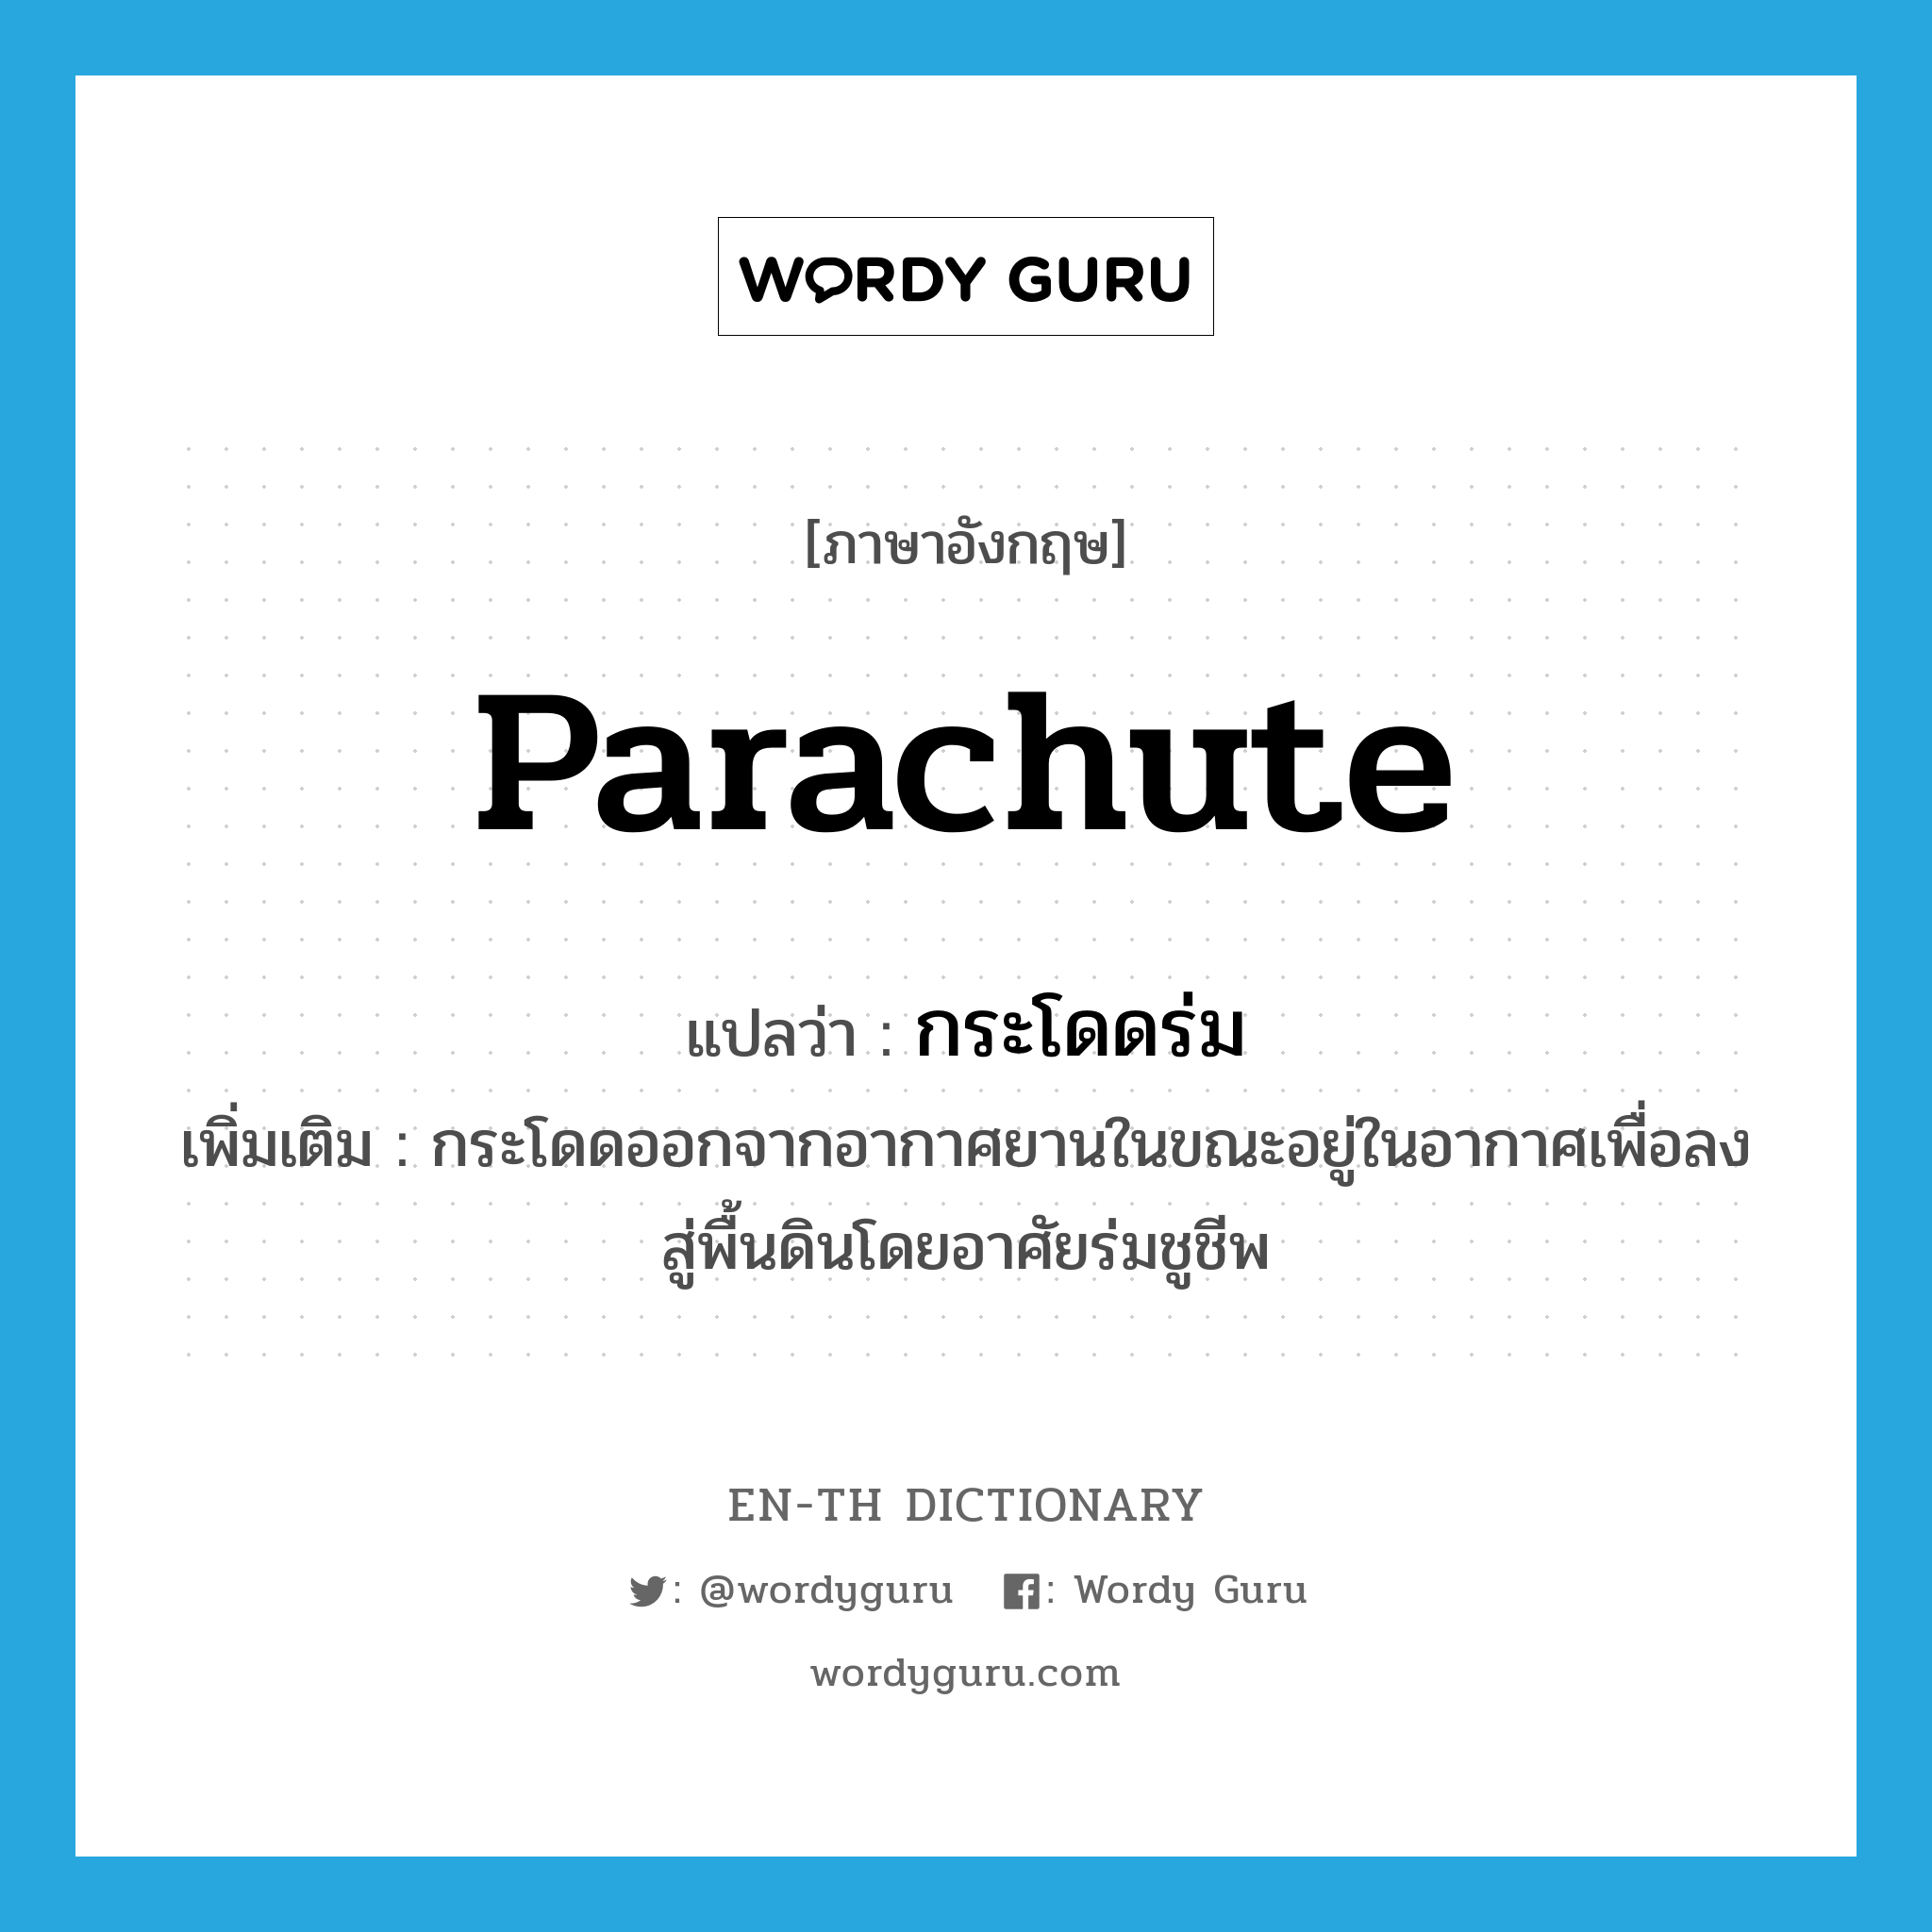 parachute แปลว่า?, คำศัพท์ภาษาอังกฤษ parachute แปลว่า กระโดดร่ม ประเภท V เพิ่มเติม กระโดดออกจากอากาศยานในขณะอยู่ในอากาศเพื่อลงสู่พื้นดินโดยอาศัยร่มชูชีพ หมวด V